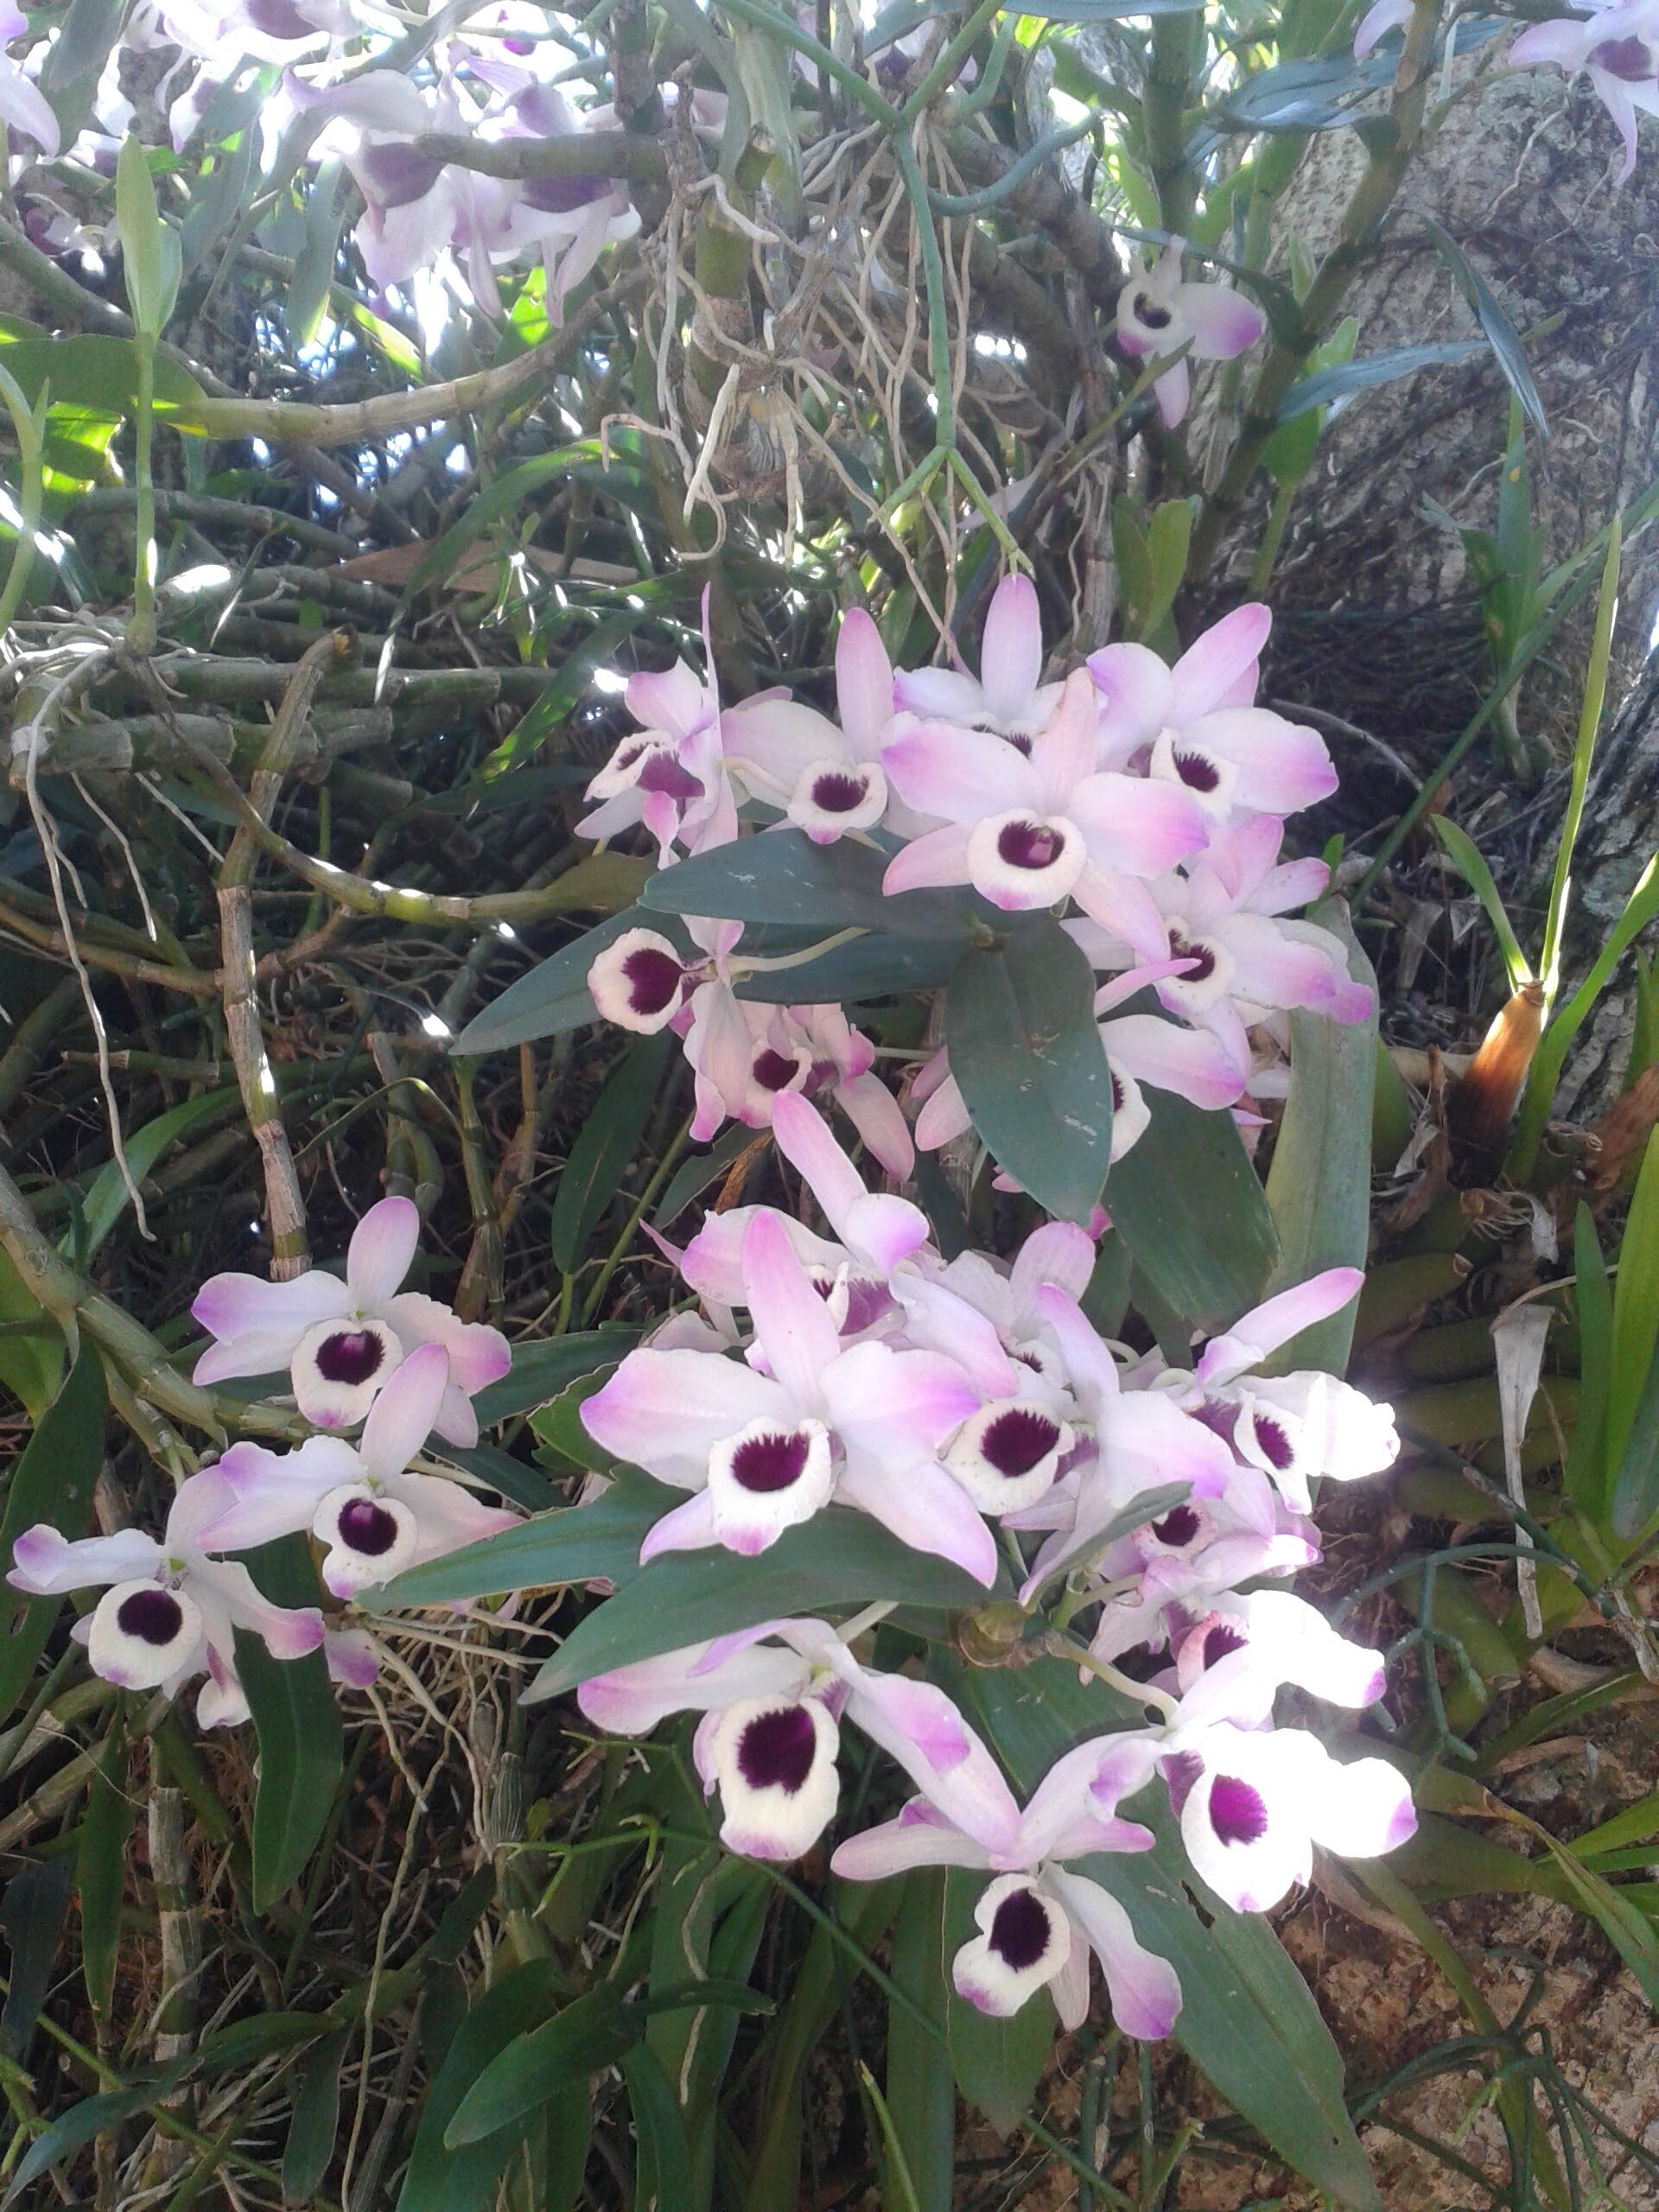 Flora de Misiones: Charla sobre Frutales y Orquídeas Nativas en el IMiBio